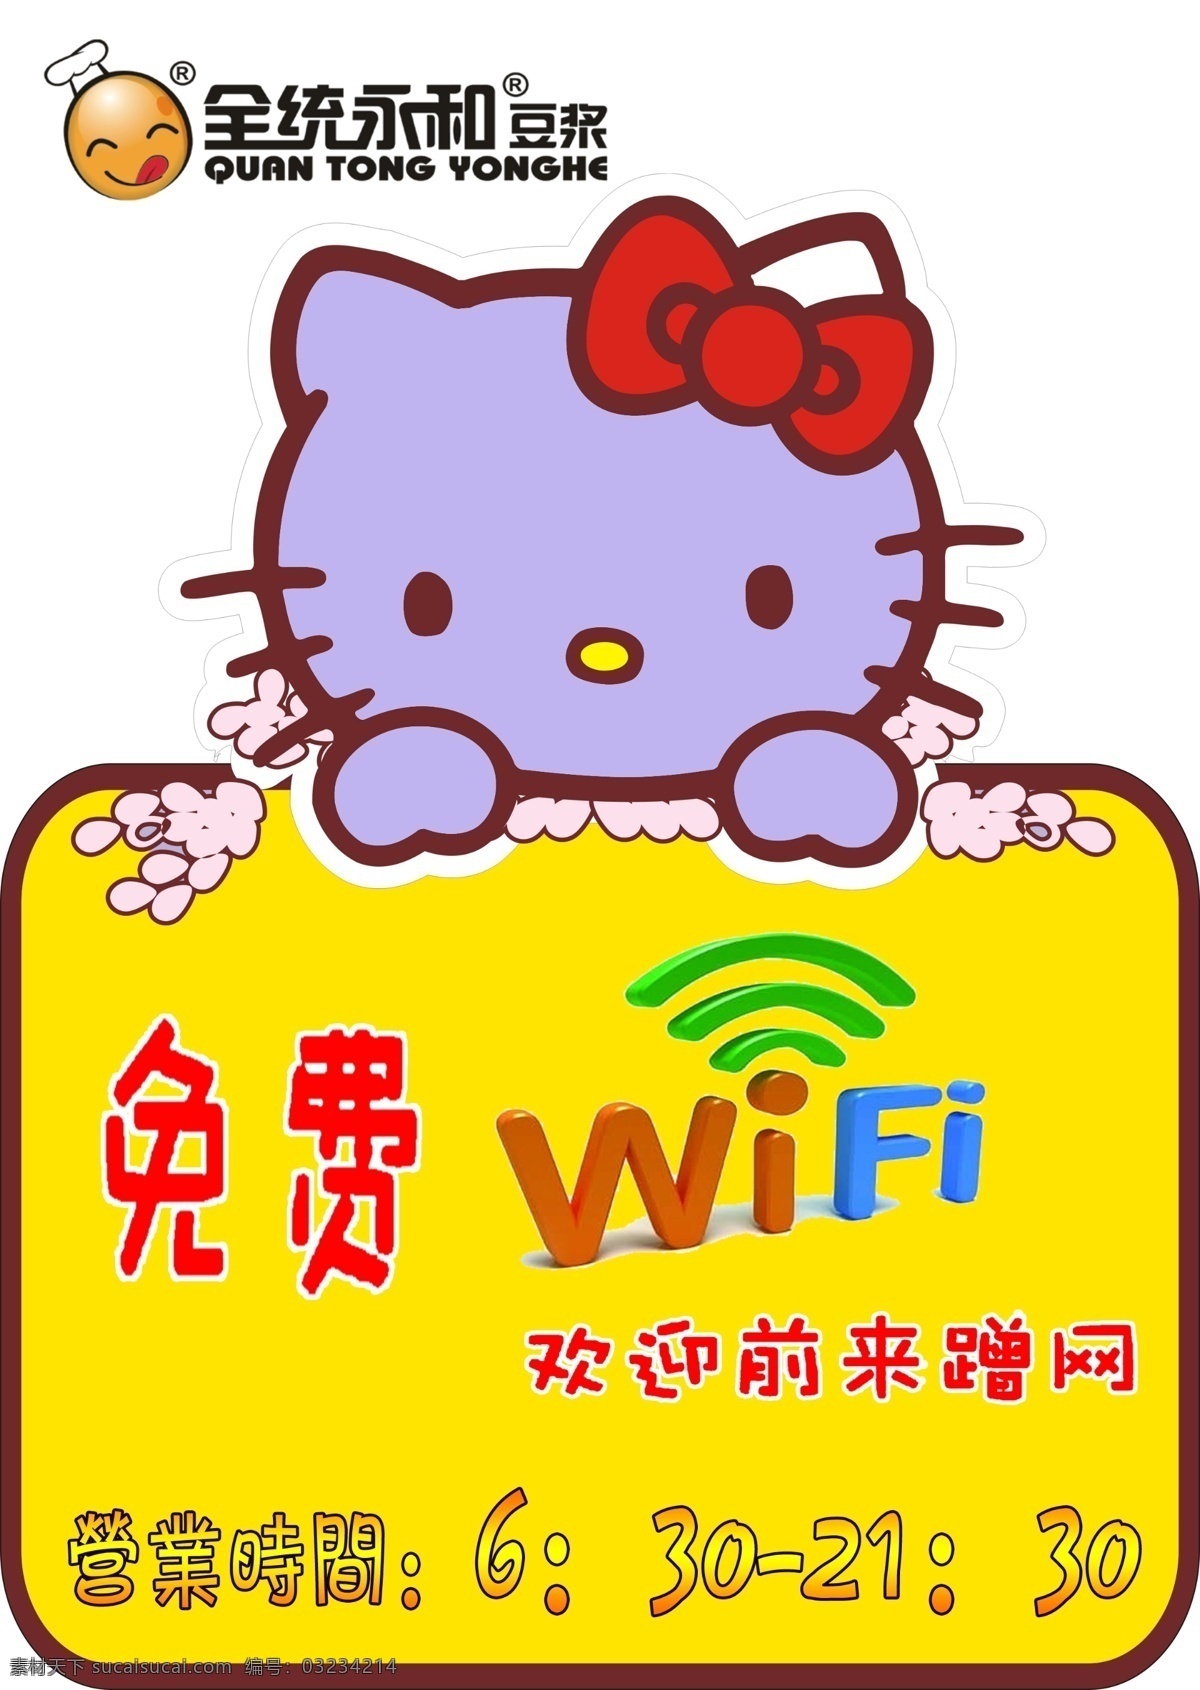 提供 免费 wifi 便利 海报 标志 图 wifi图标 无线wifi wifi标识 分层